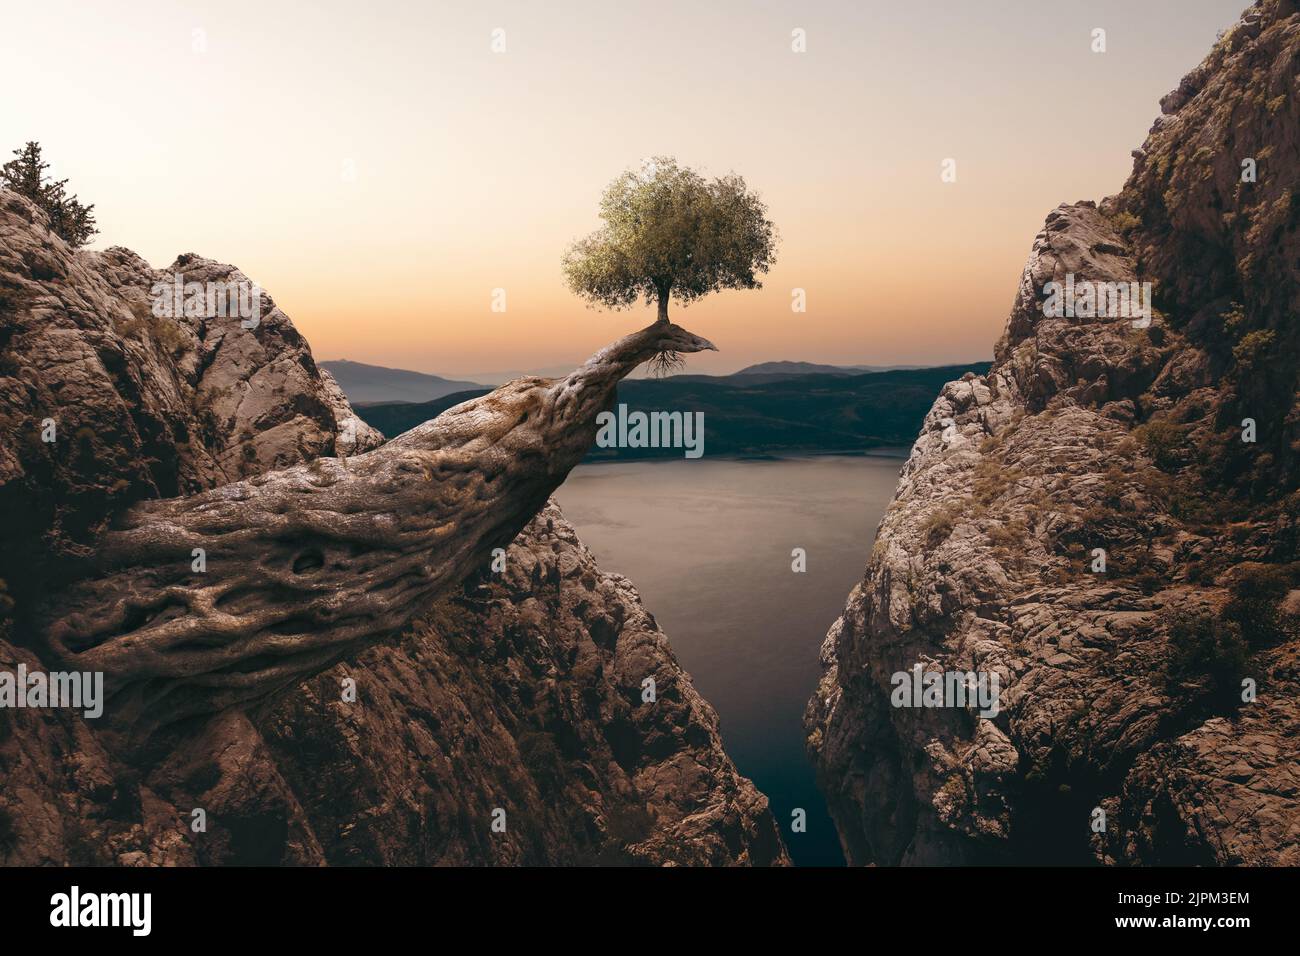 Un piccolo albero sta crescendo su un enorme tronco tra le montagne. Fantasia irrealistica e miracoli del concetto di natura. Foto Stock